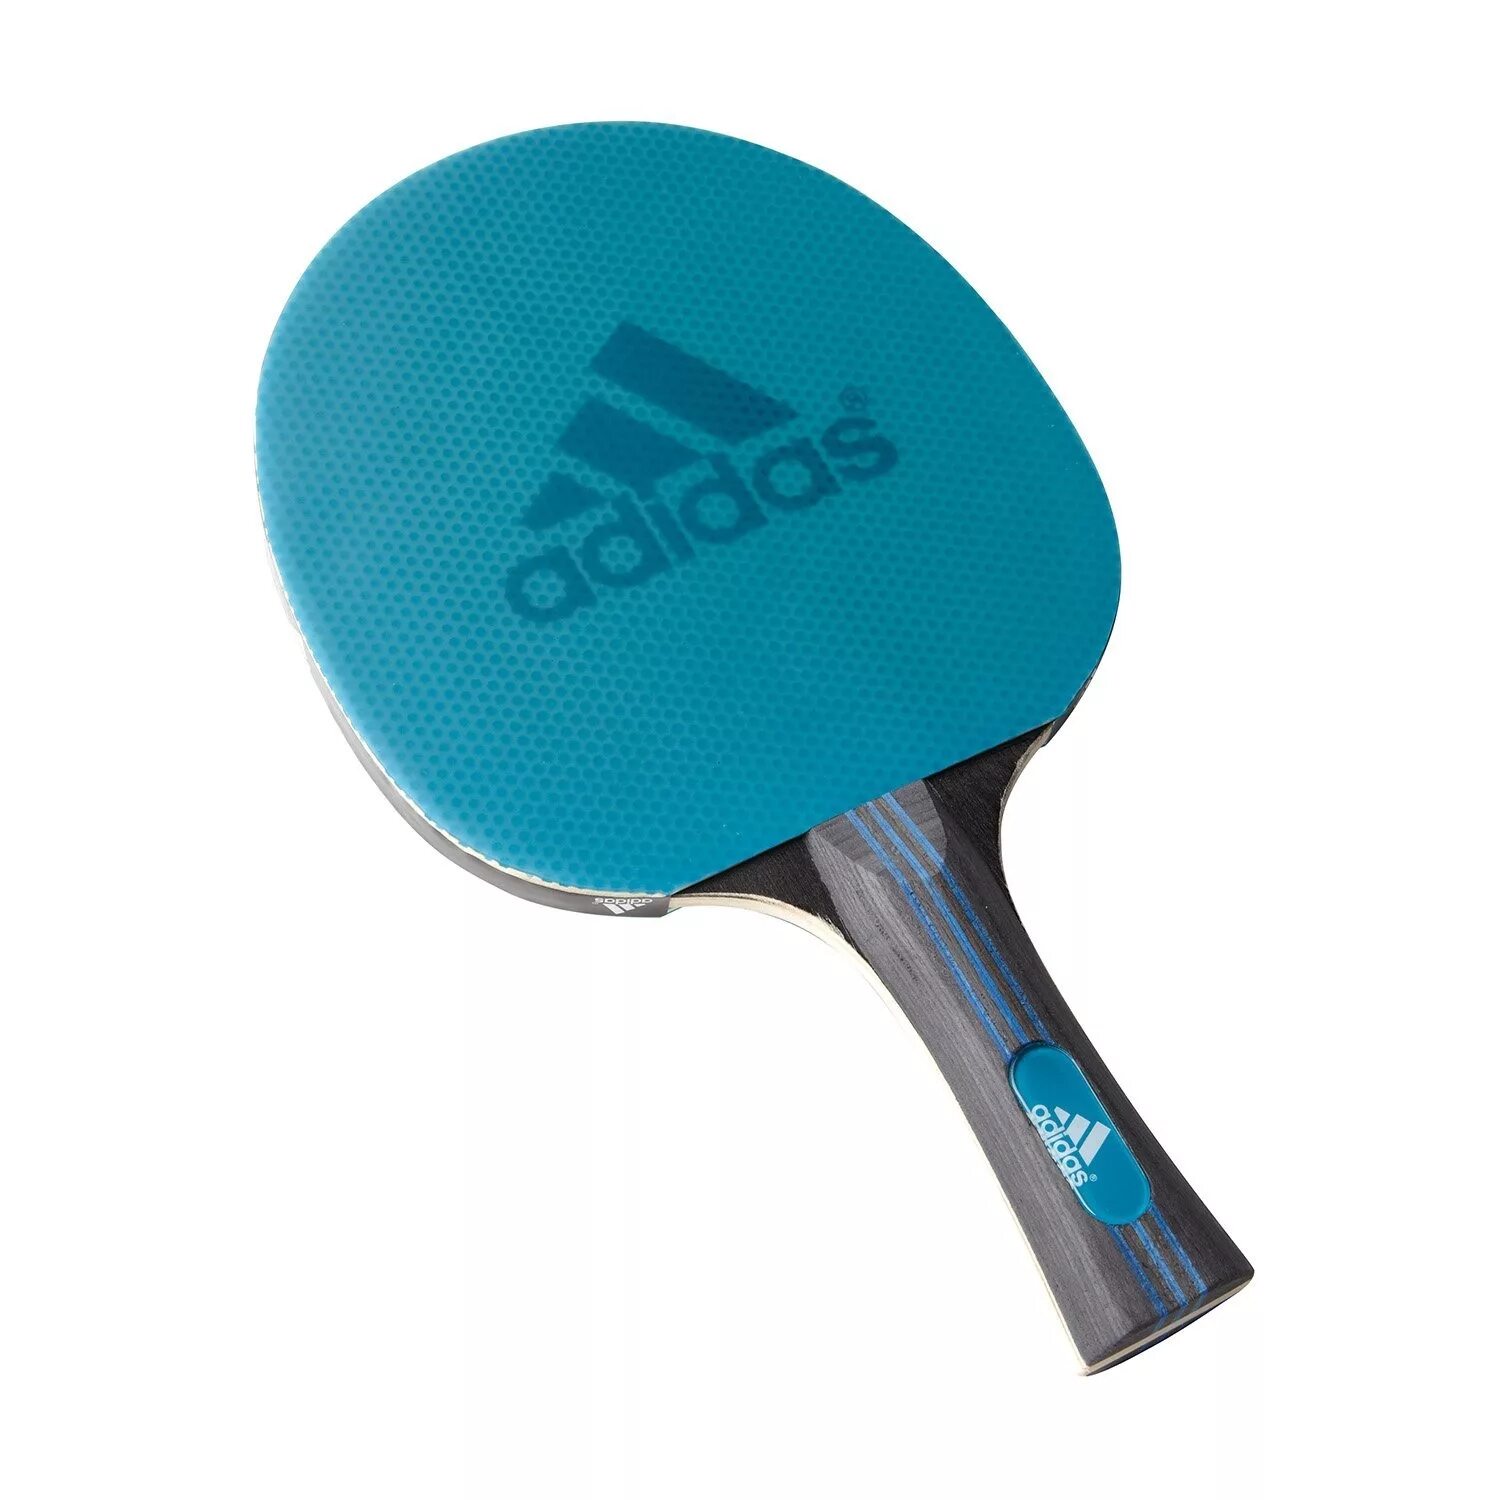 Сколько стоит ракетка для настольного тенниса. Adidas Laser ракетка для настольного тенниса. Ракетка адидас для настольного тенниса. Ракетка адидас для настольного тенниса Vigor 120. Ракетка для пинг понга adidas.